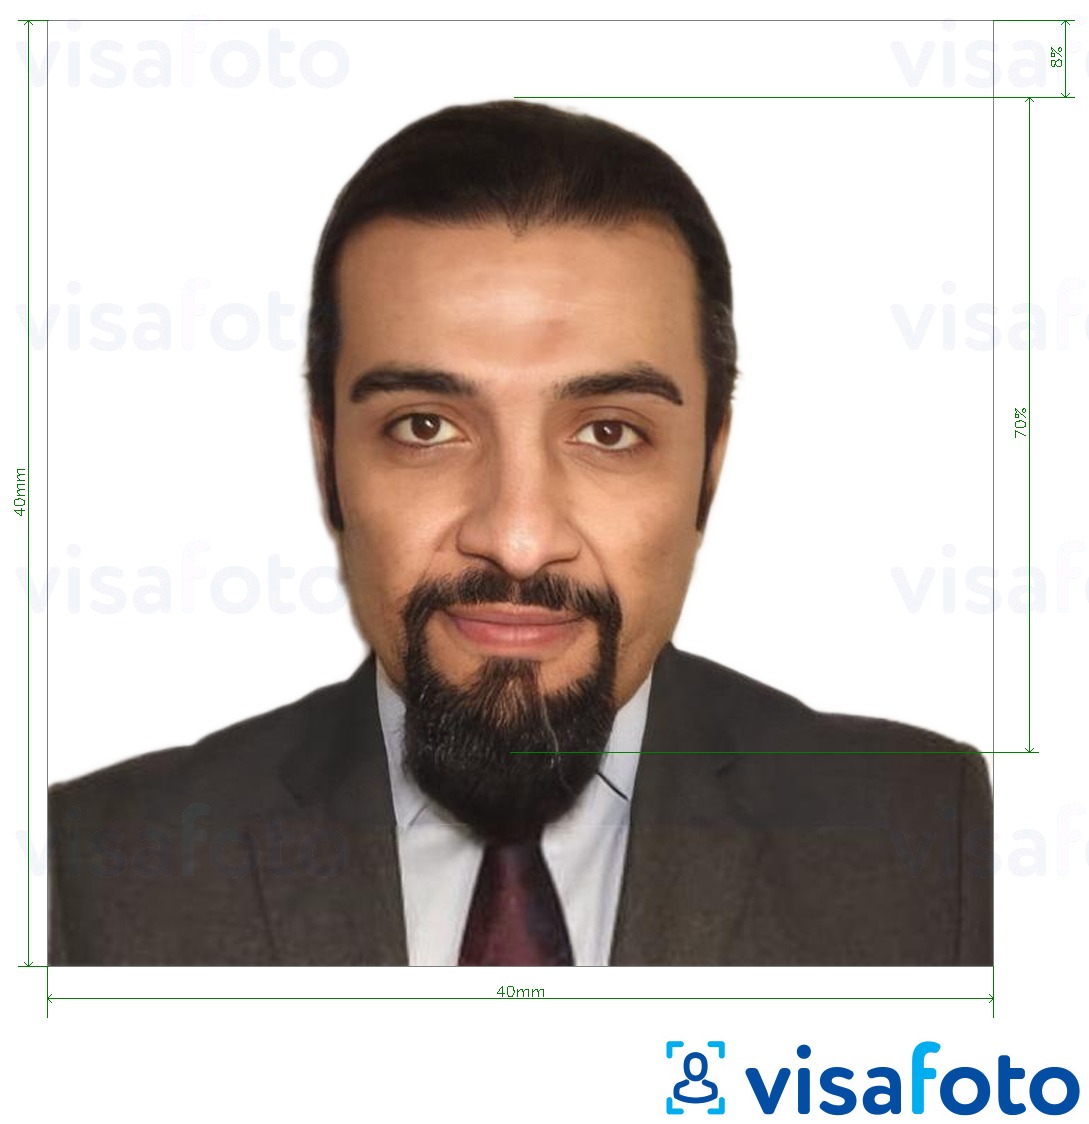 Voorbeeld van foto voor Syrisch paspoort 40x40 mm met exacte maatspecificatie